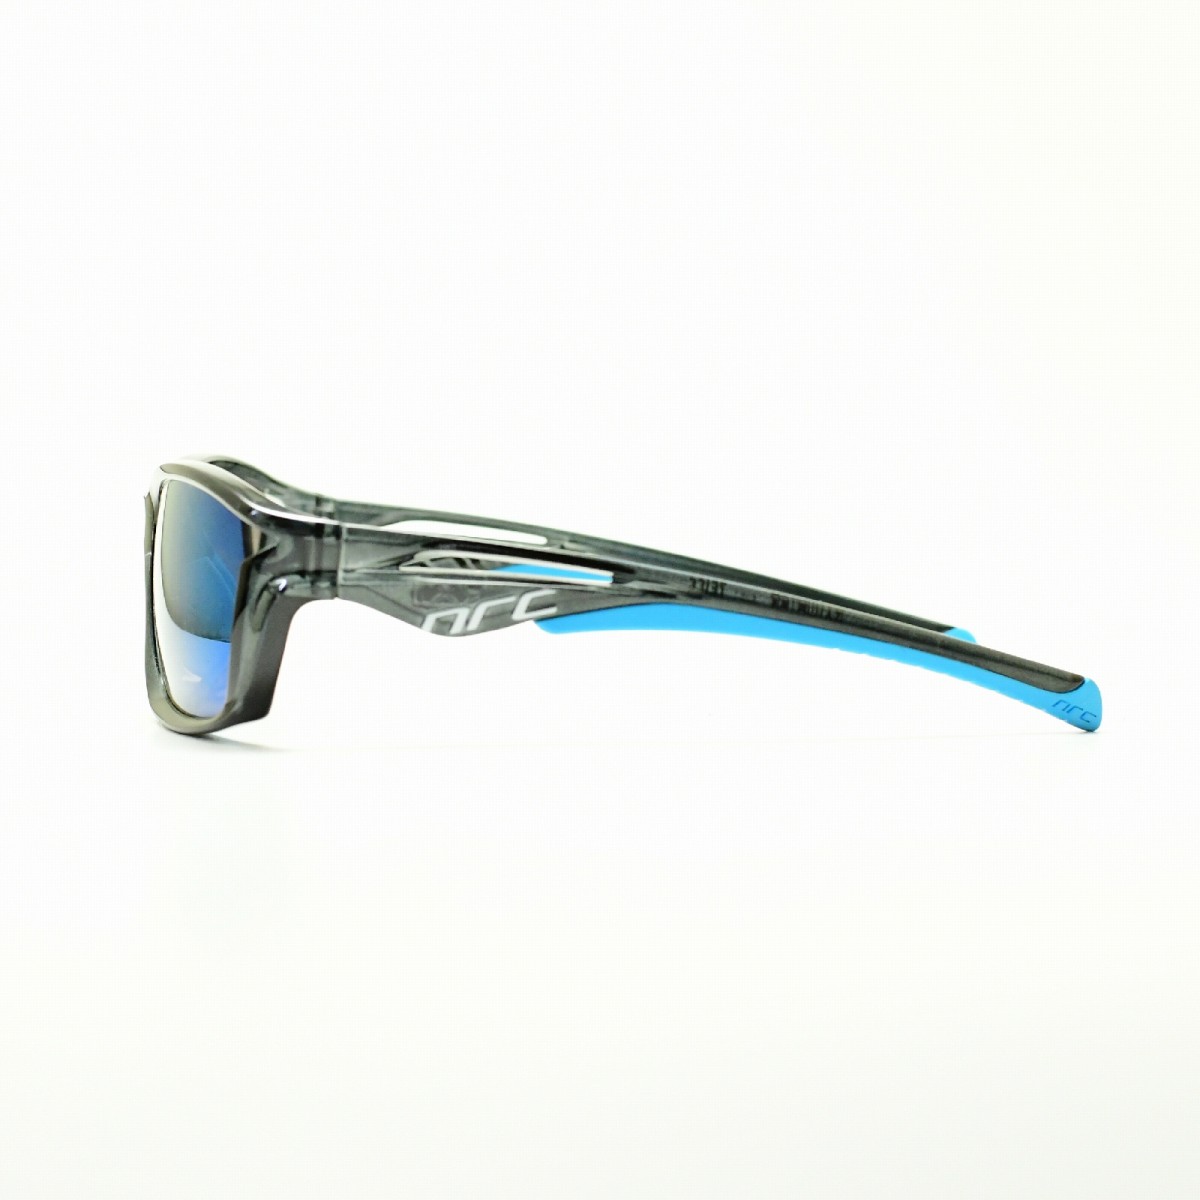 Nrc エヌアールシー Rx1 Water メガネ 眼鏡 めがね メンズ レディース おしゃれ ブランド人気 おすすめ フレーム 流行り 度付き レンズ サングラス スポーツ